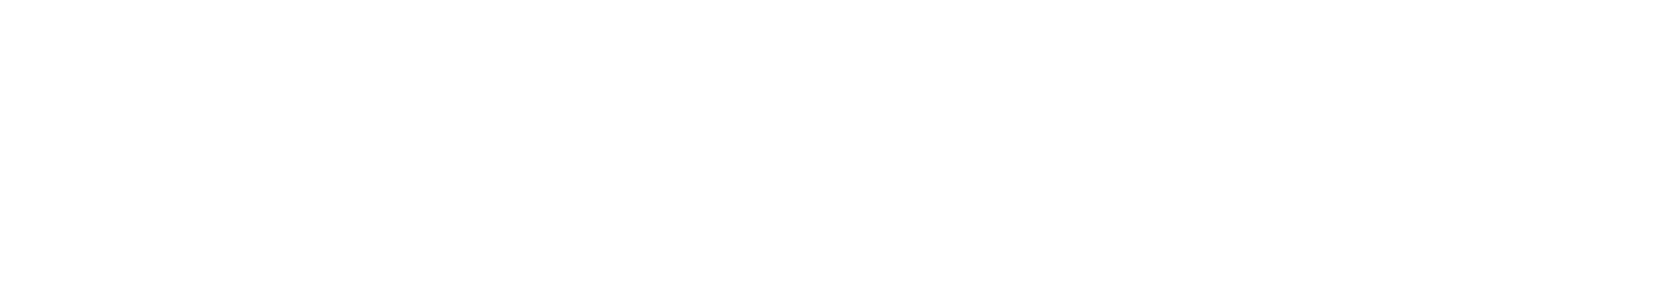 Glencore logo large for dark backgrounds (transparent PNG)